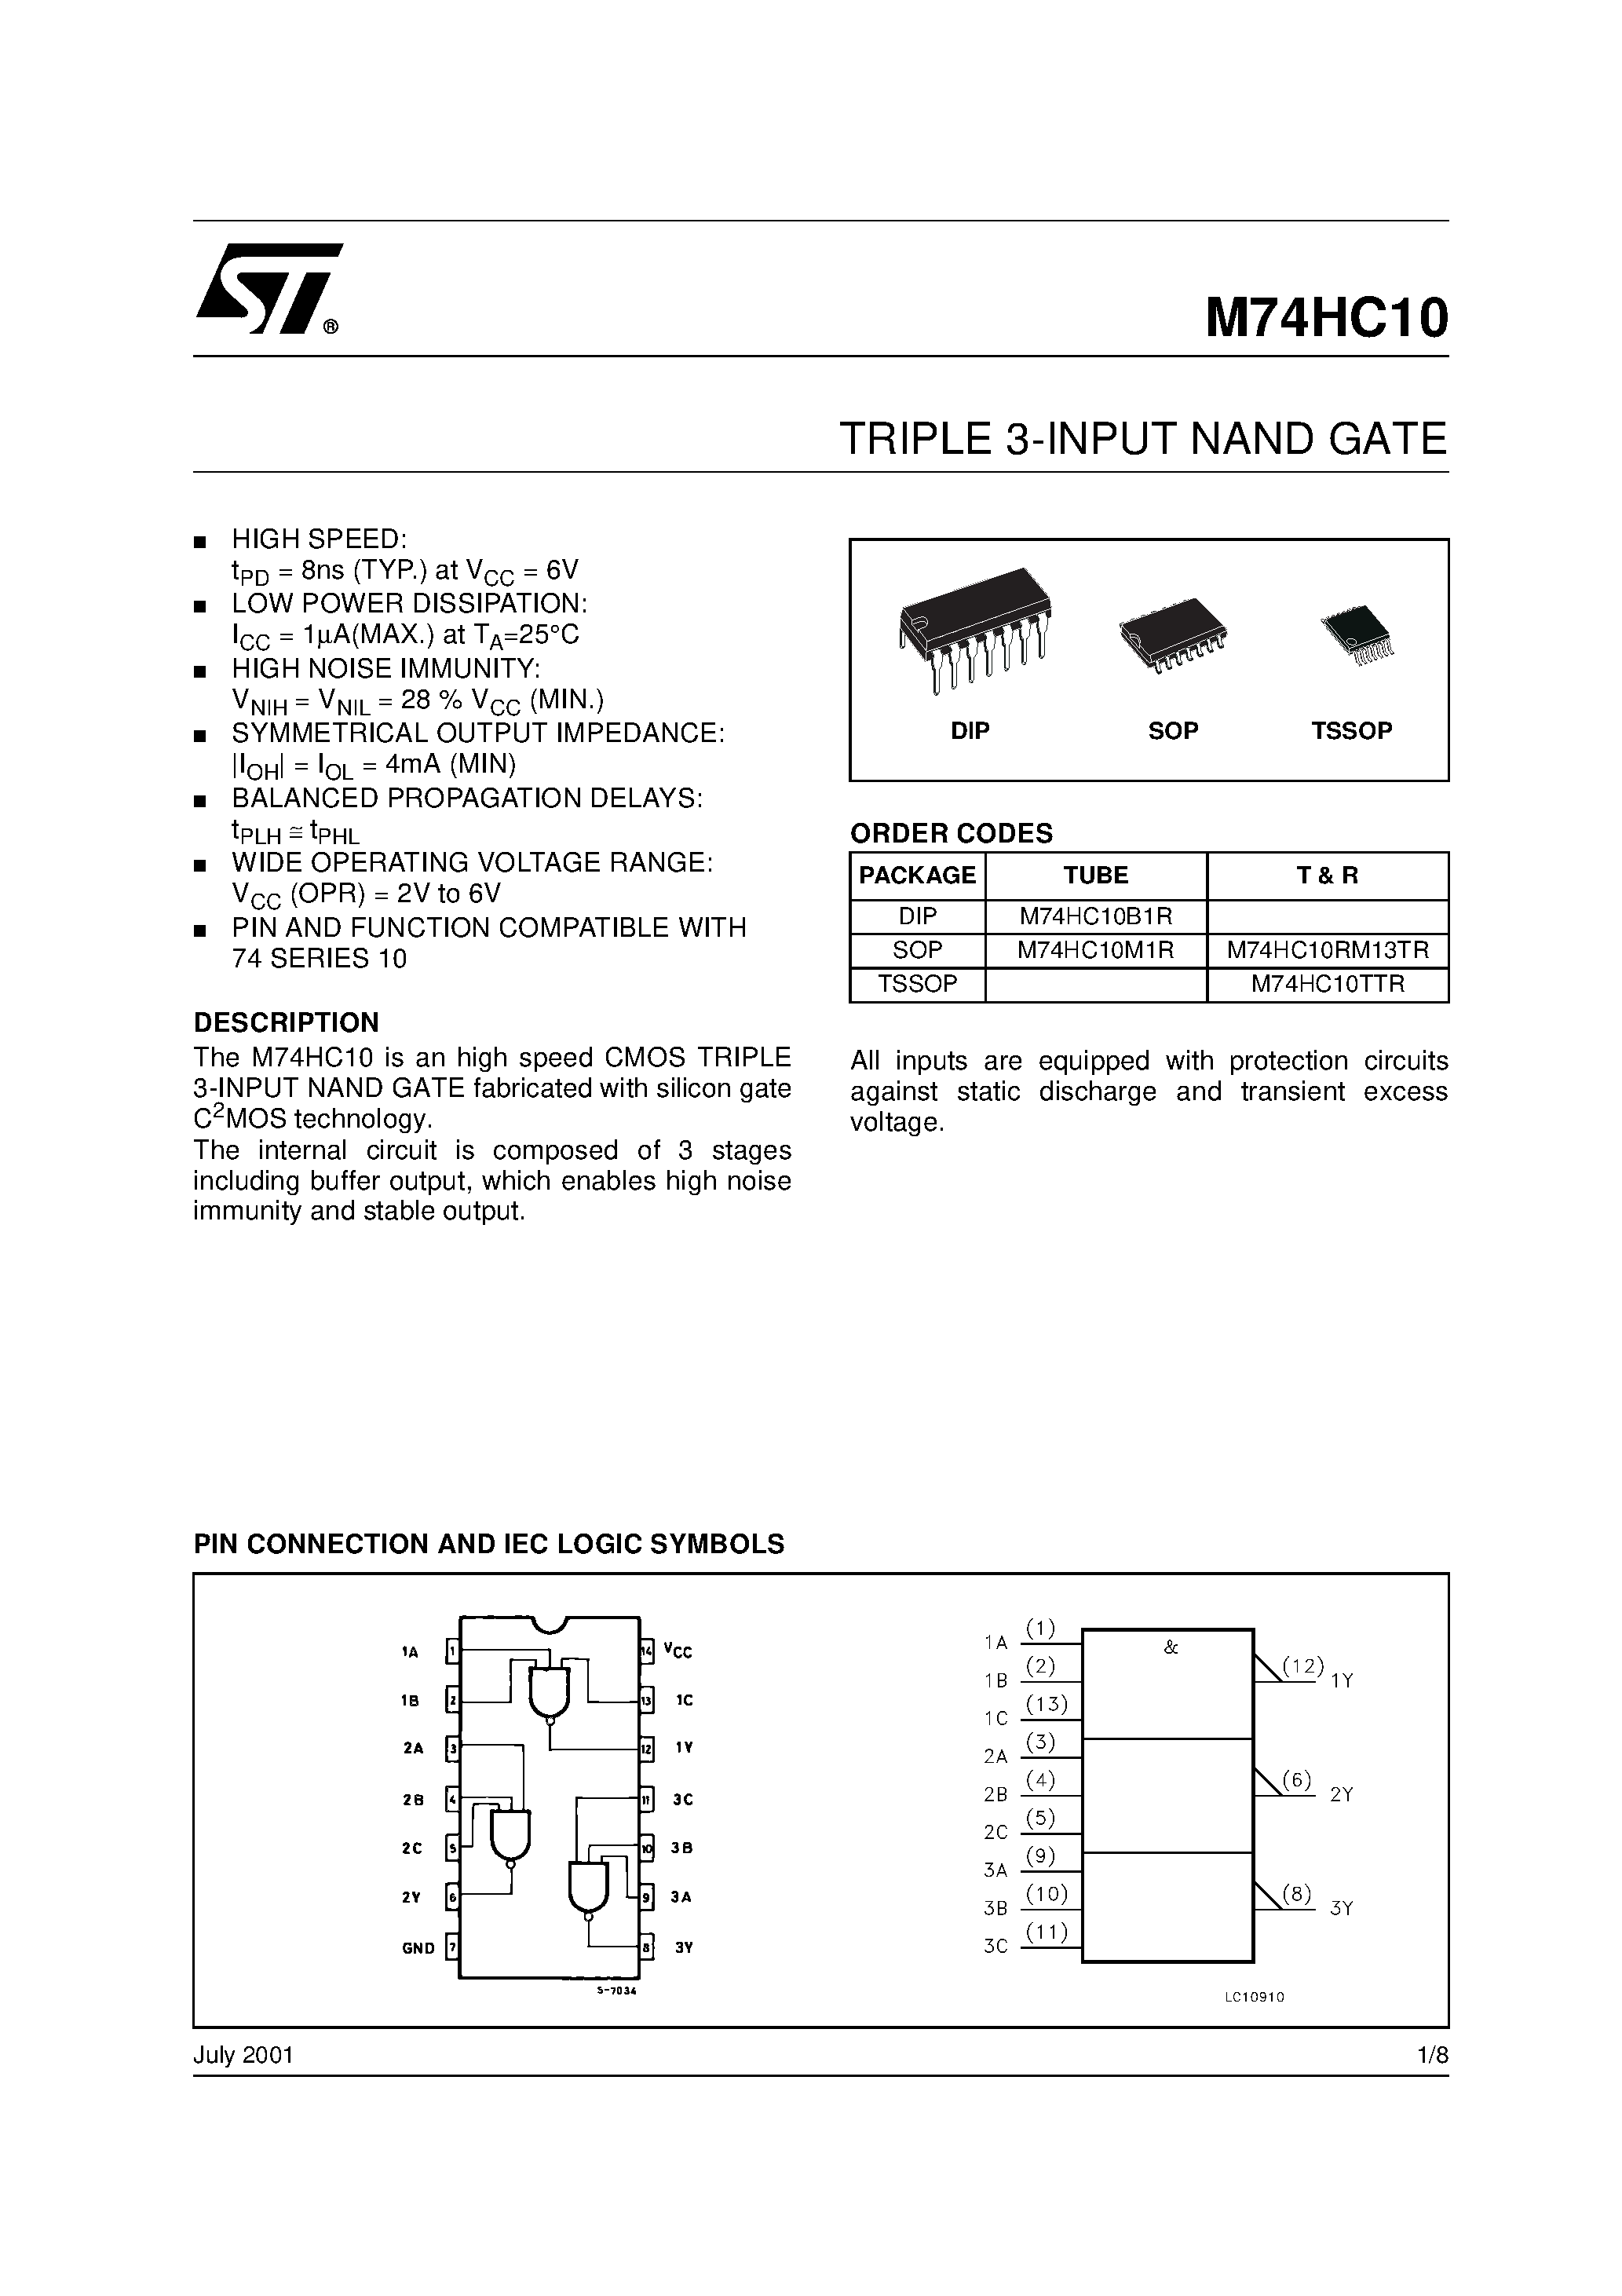 Datasheet M74HC10 - TRIPLE 3-INPUT NAND GATE page 1